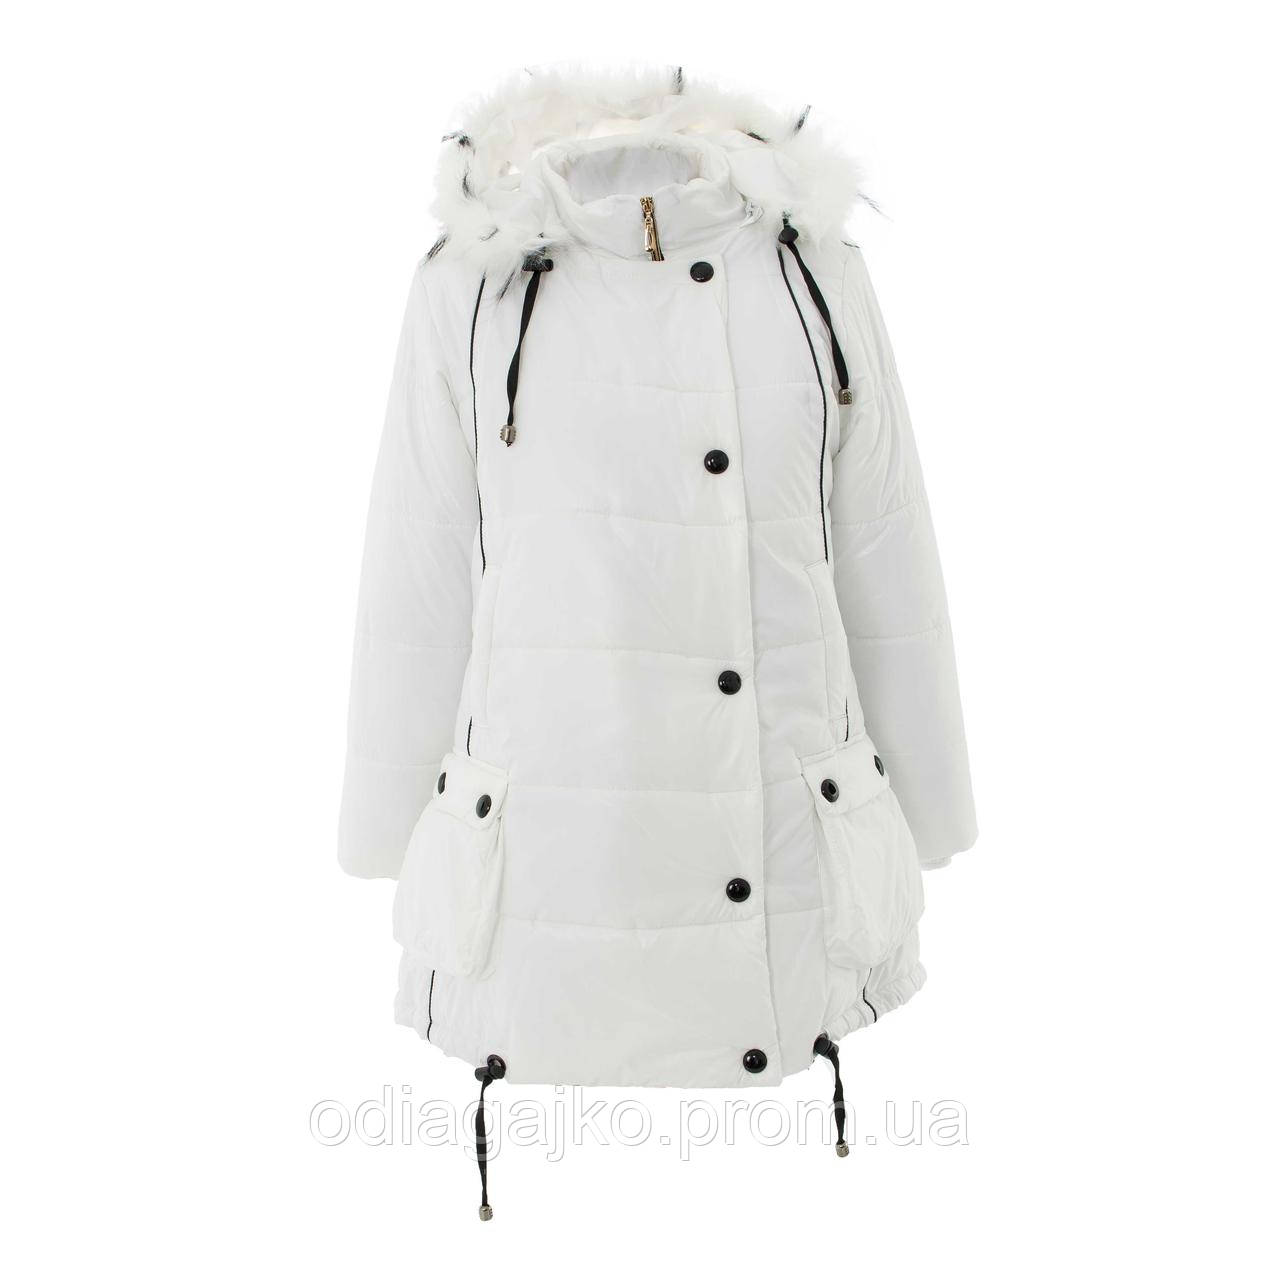 Куртка/ПАЛЬТО дитяча для дівчинки зима Карнавал 134,140,146 см знімна підкладка на блискавці — овчина БІЛЕ